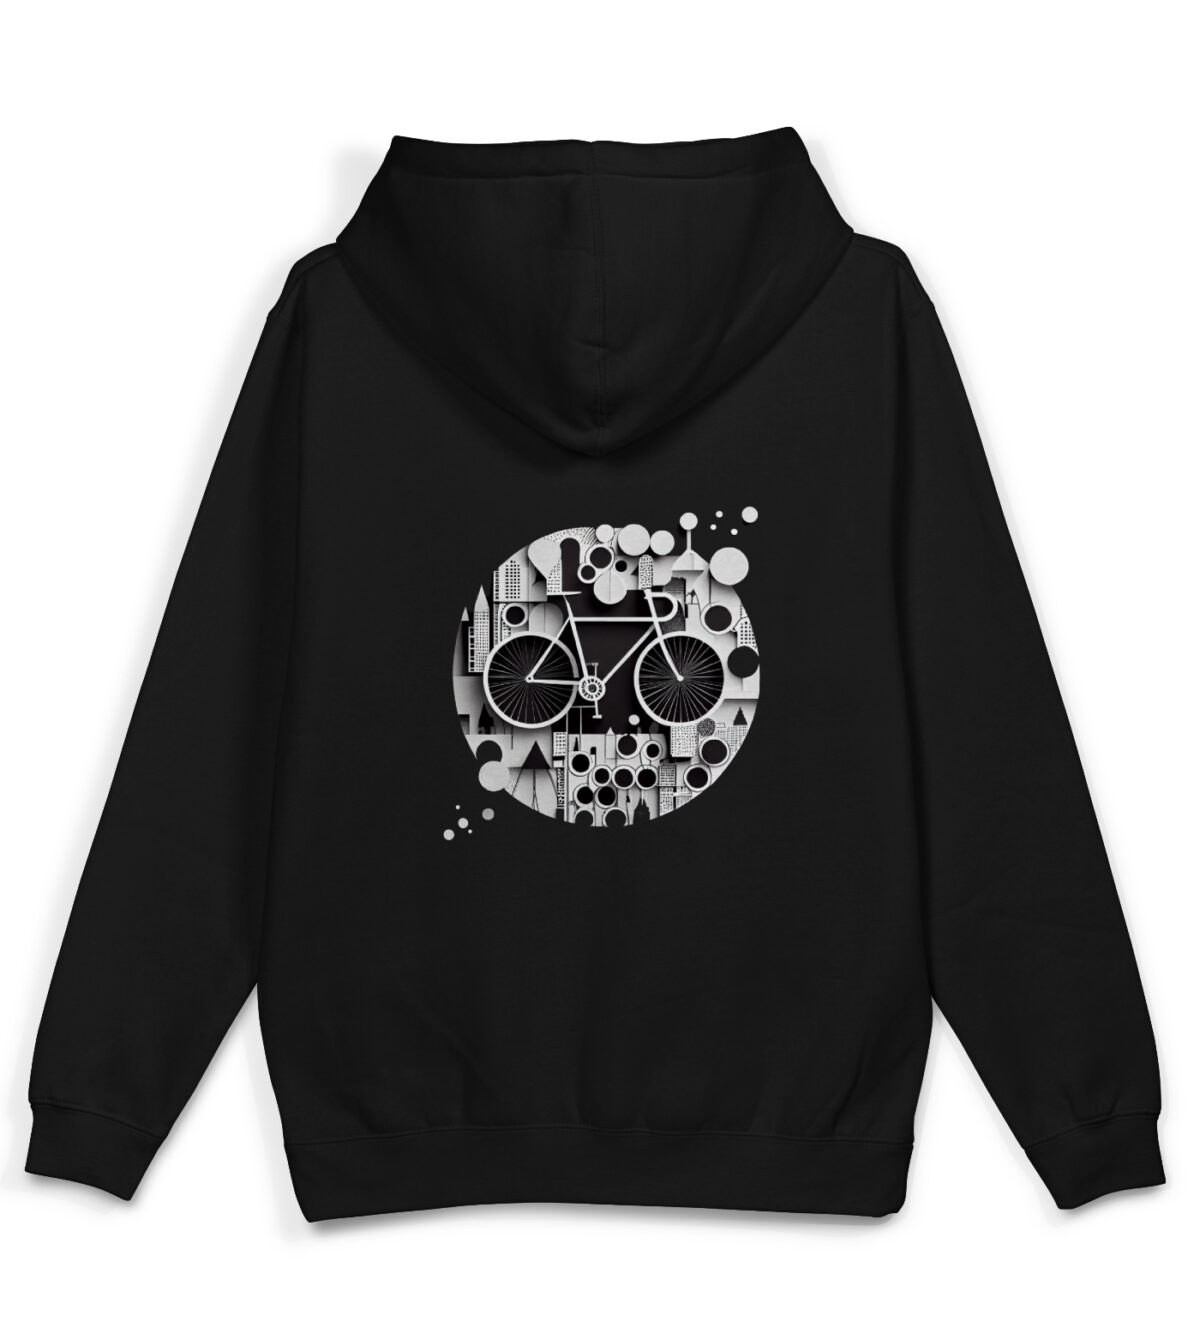 Black Graphic Hoodies Bike Hoodies Abstract